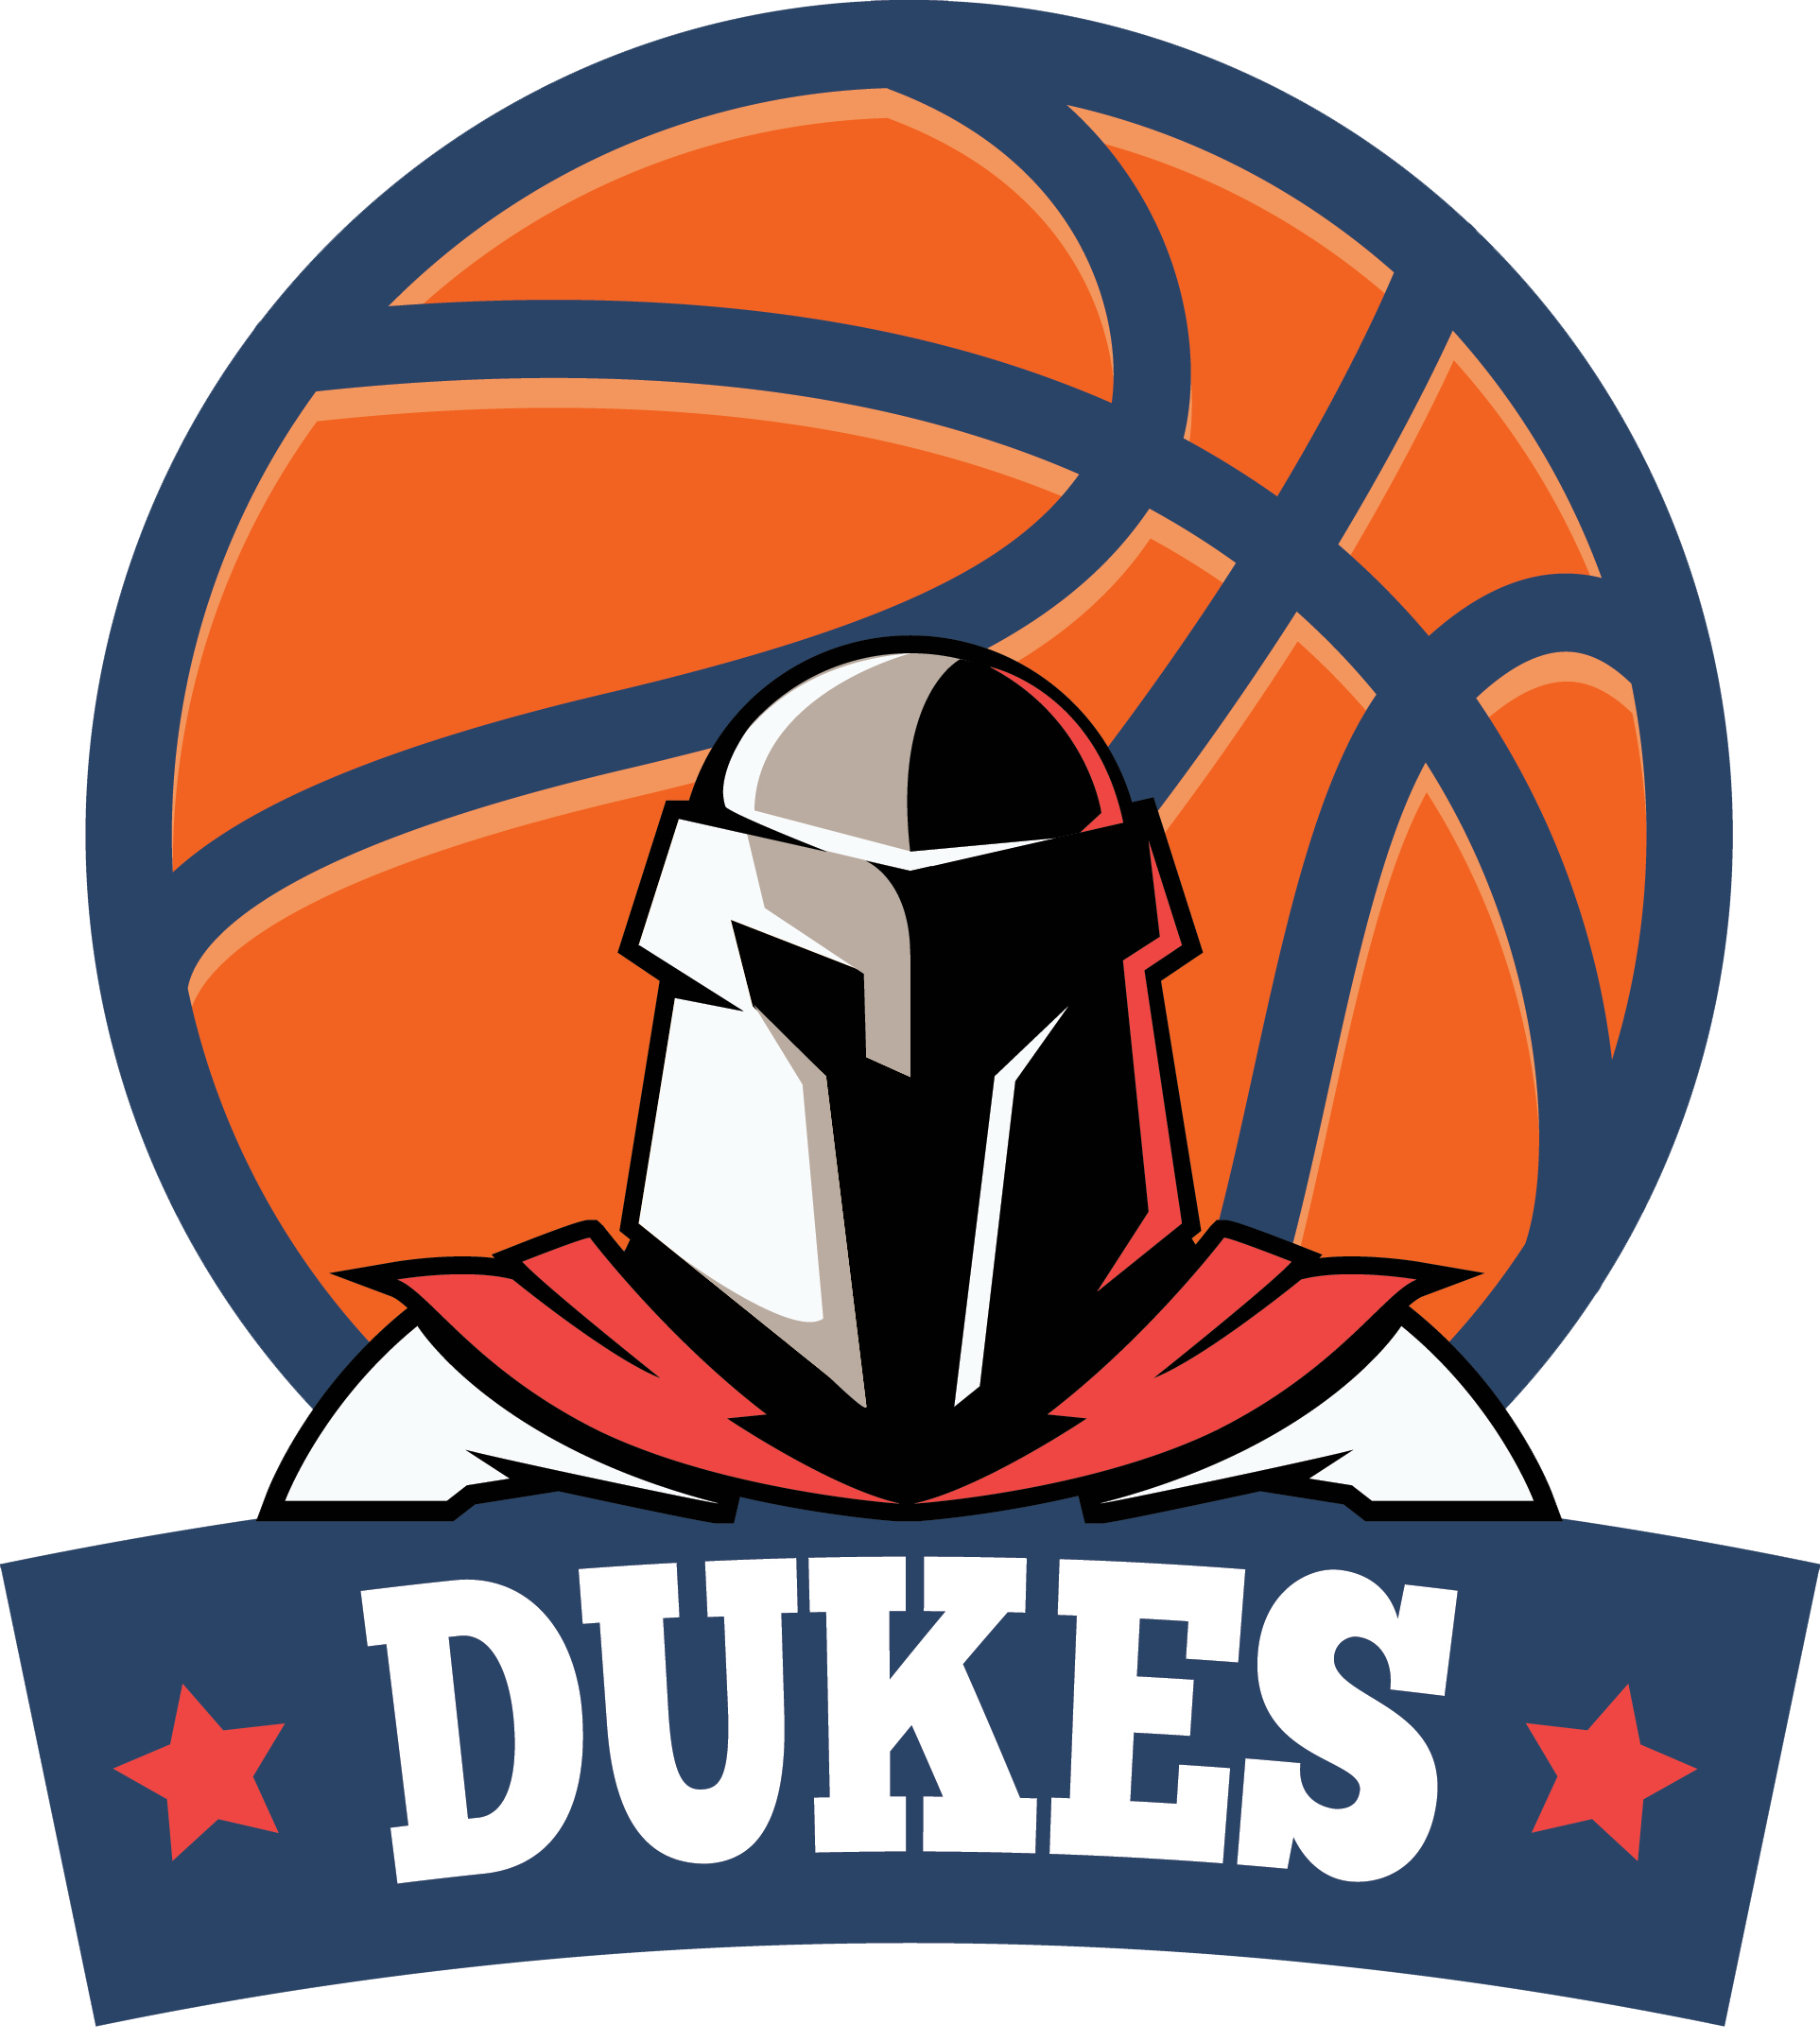 Team symbol of DUKES